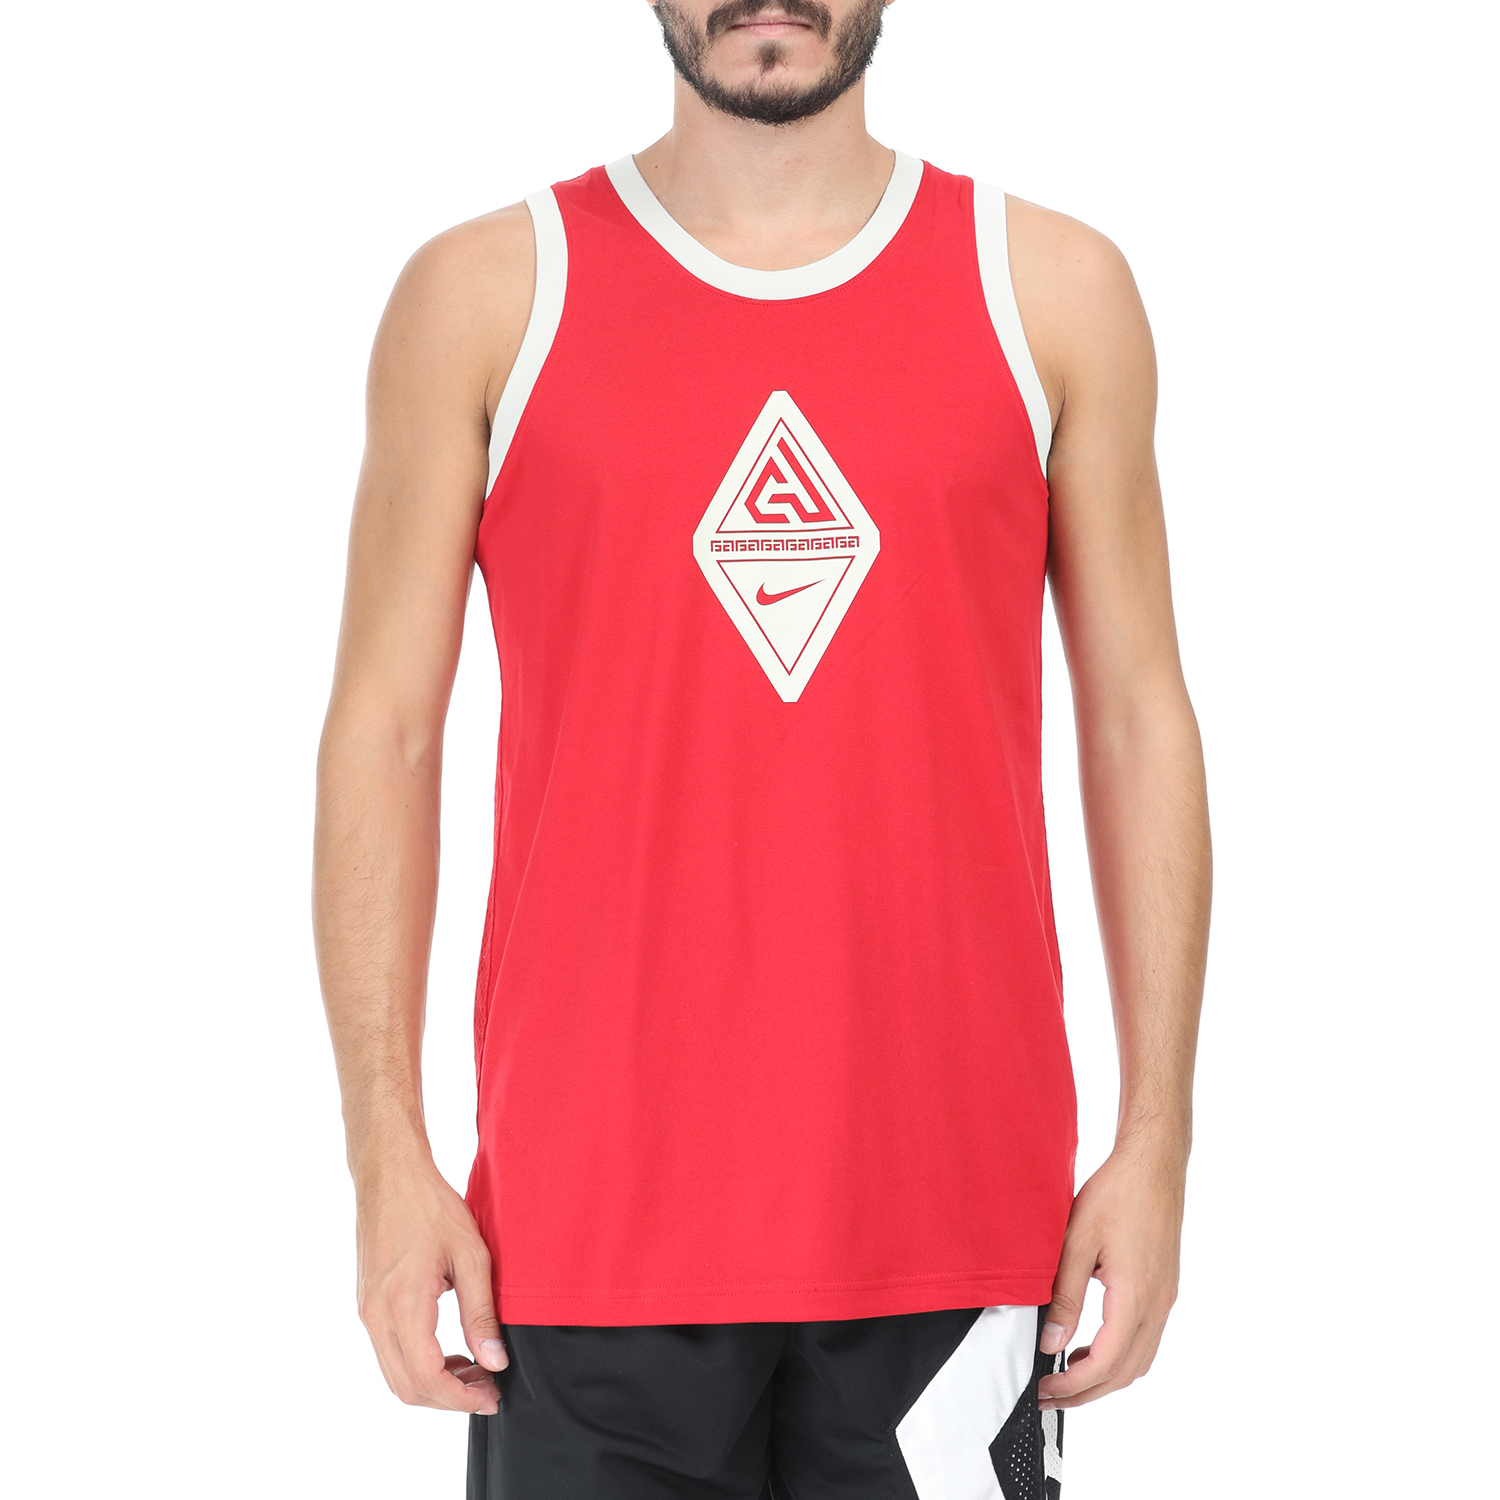 Ανδρικά/Ρούχα/Αθλητικά/T-shirt NIKE - Ανδρική αμάνικη μπλούζα GIANNIS M NK SL κόκκινη